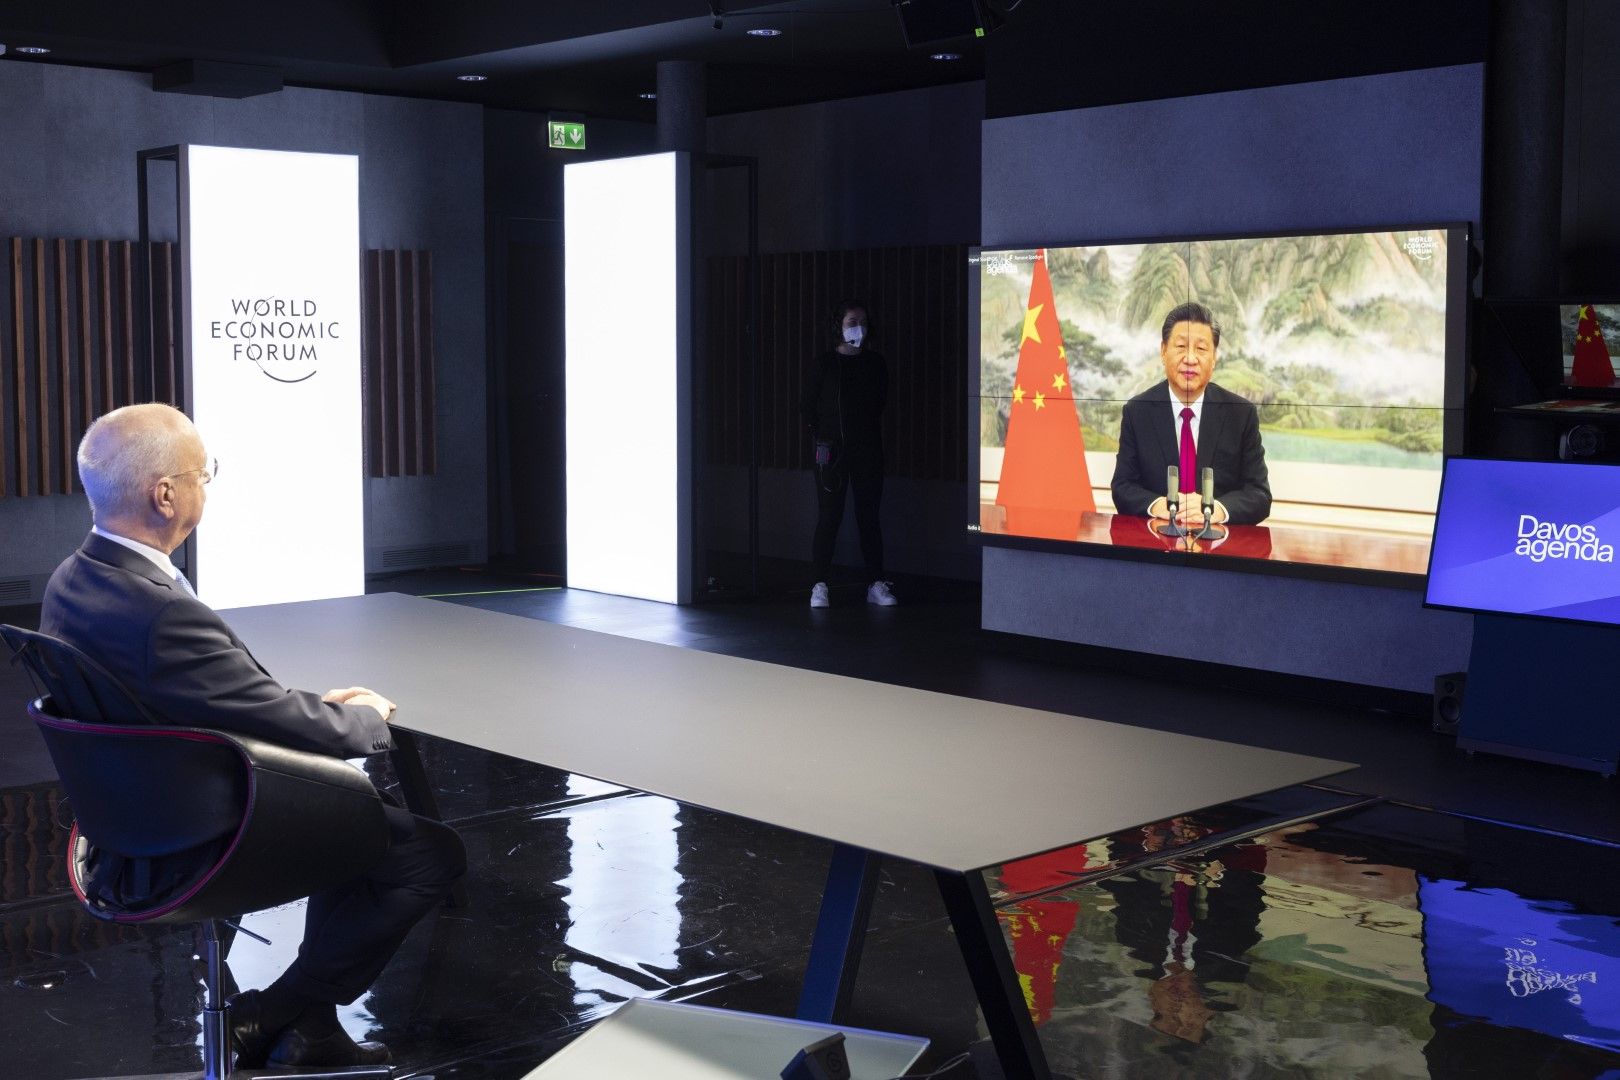 Герман Клаус Шваб, основател и изпълнителен председател на Световния икономически форум, слуша китайския президент Си Дзинпин по време на откриващия се форум "Давос 2022", в Колони, близо до Женева, Швейцария, понеделник, 17 януари, 2022 г.